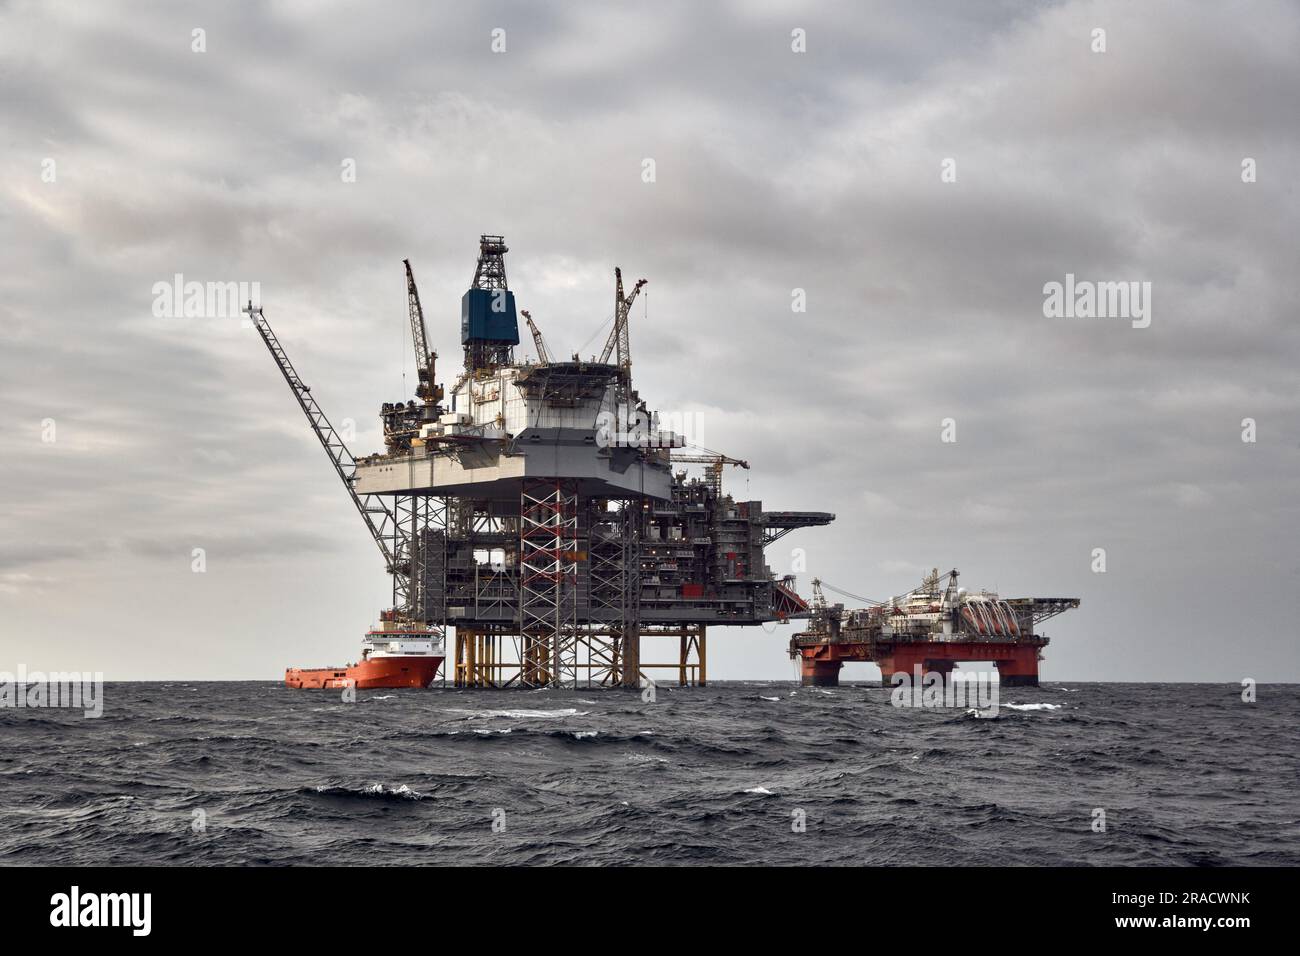 Offshore-Erdöl- und -Erdgasplattform mit Versorgungsschiff, das Frachtaktivitäten durchführt. Dunkler Himmel in der Nordsee. Stockfoto